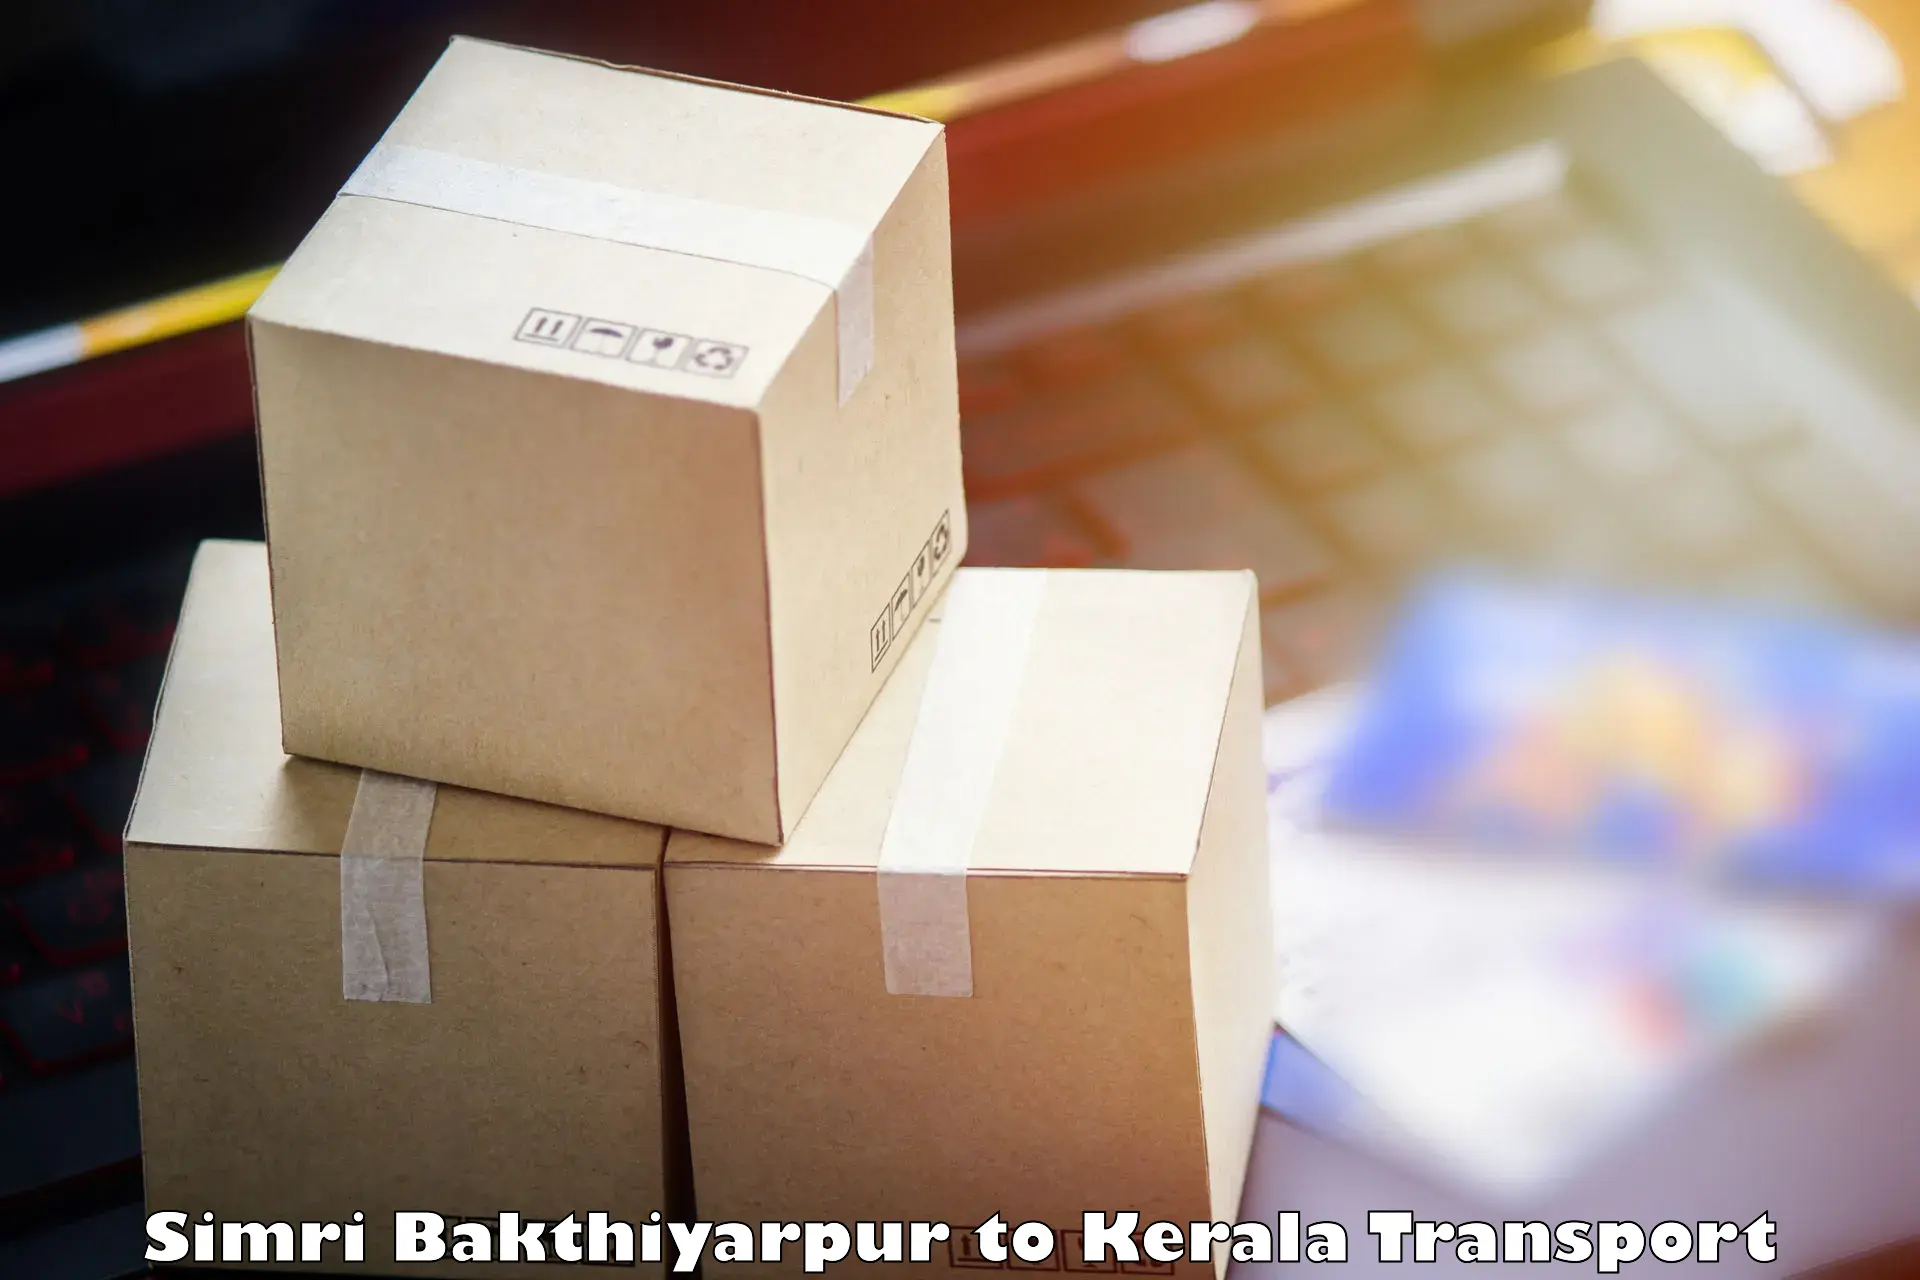 Furniture transport service Simri Bakthiyarpur to Kanhangad